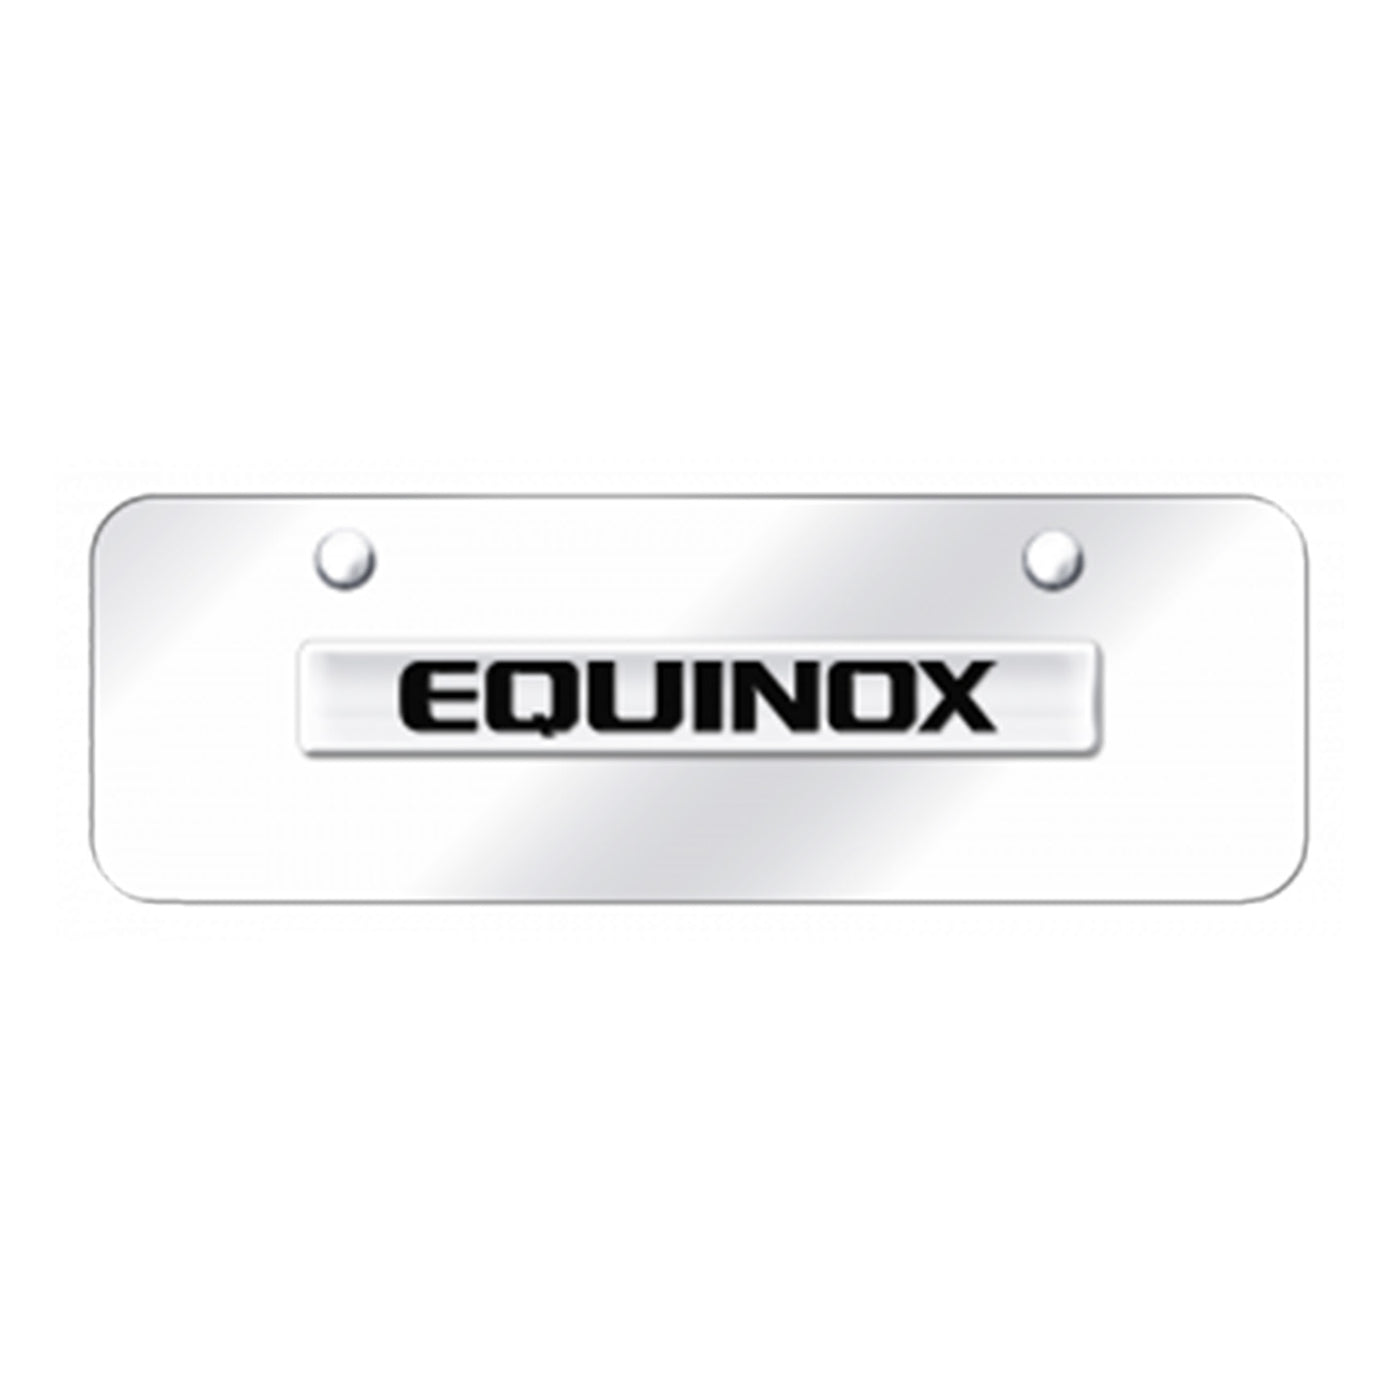 Equinox Name Mini Plate - Chrome on Mirrored